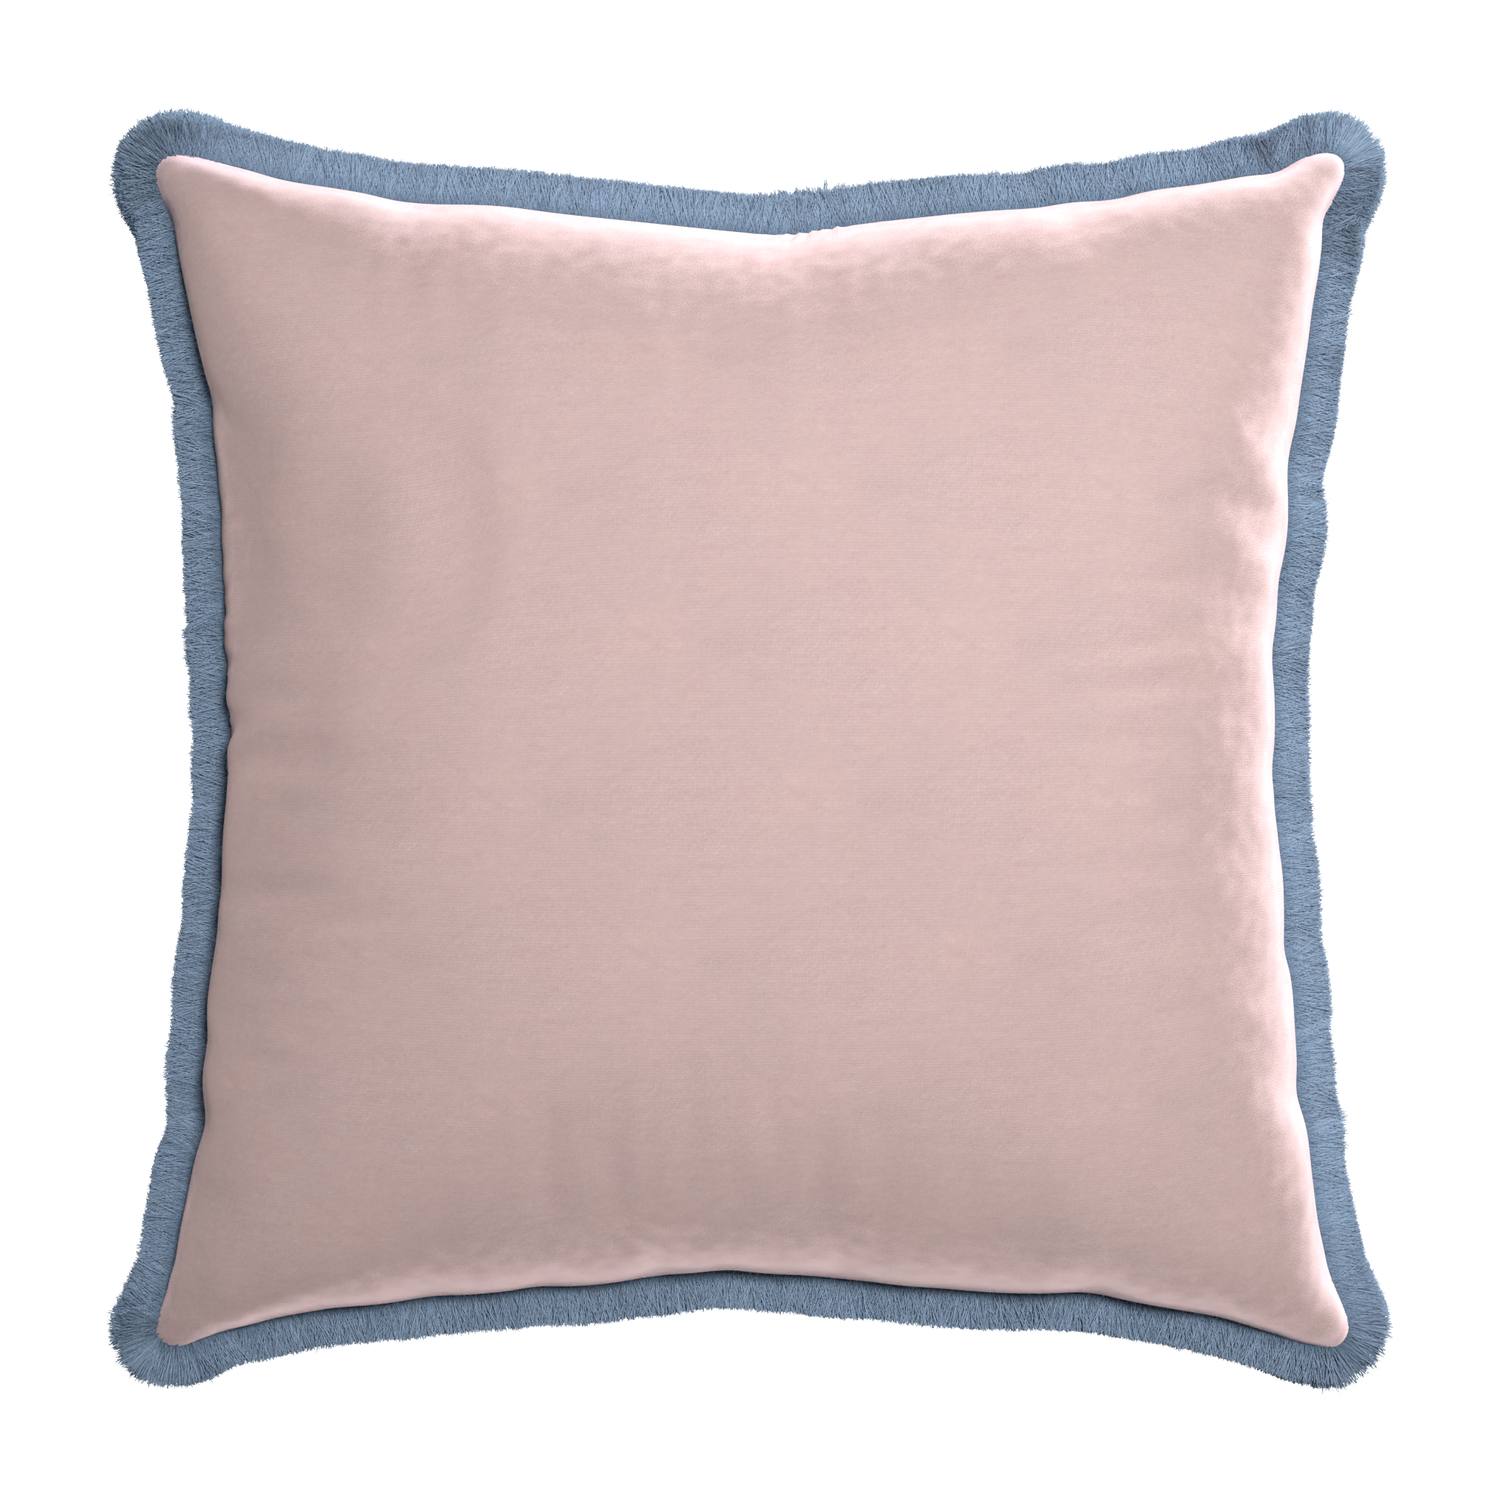 Euro-sham rose velvet custom pillow with sky fringe on white background